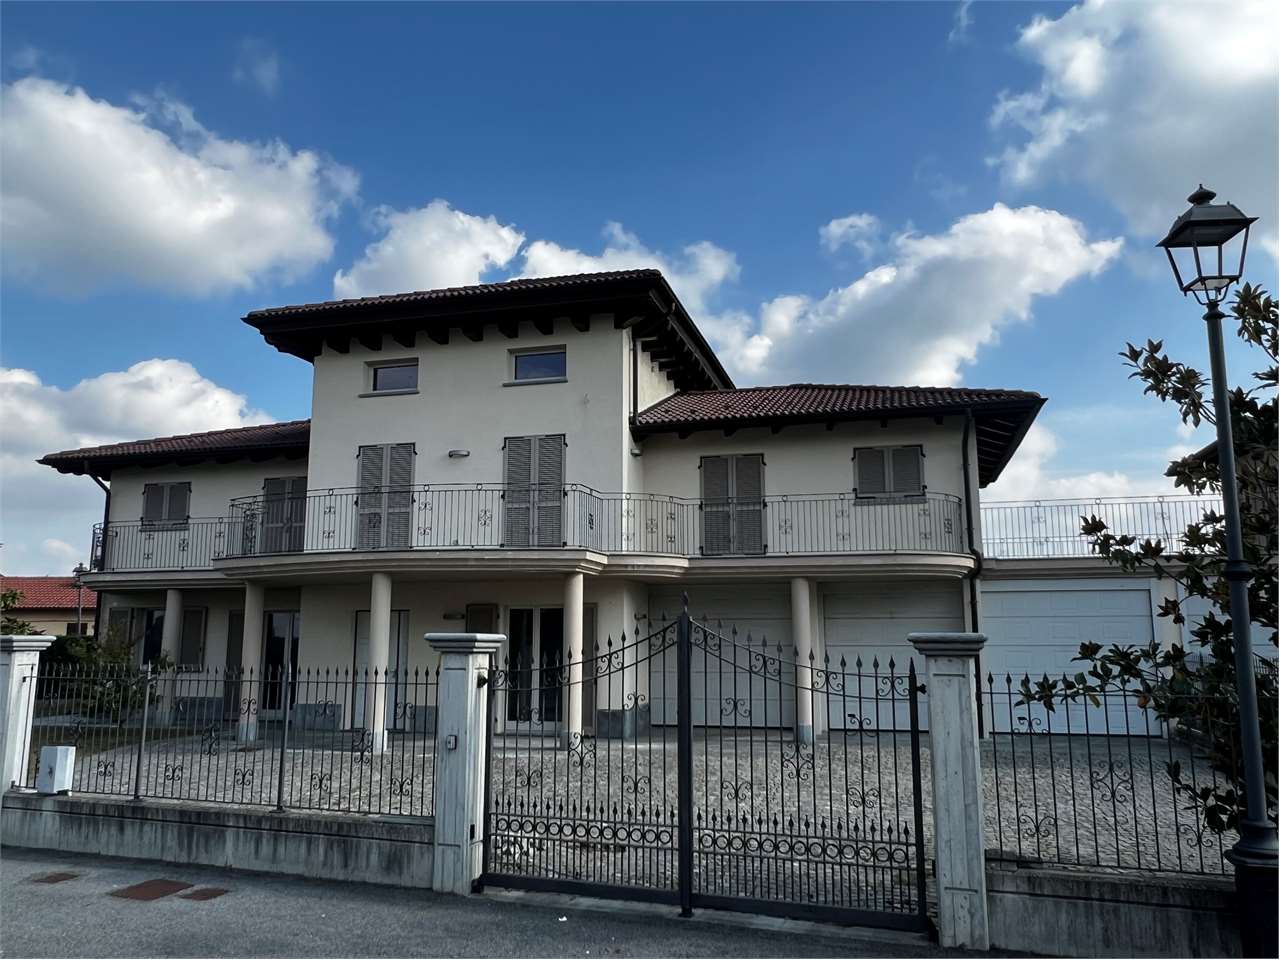 Villa in vendita a Camerano Casasco, 8 locali, prezzo € 270.000 | PortaleAgenzieImmobiliari.it